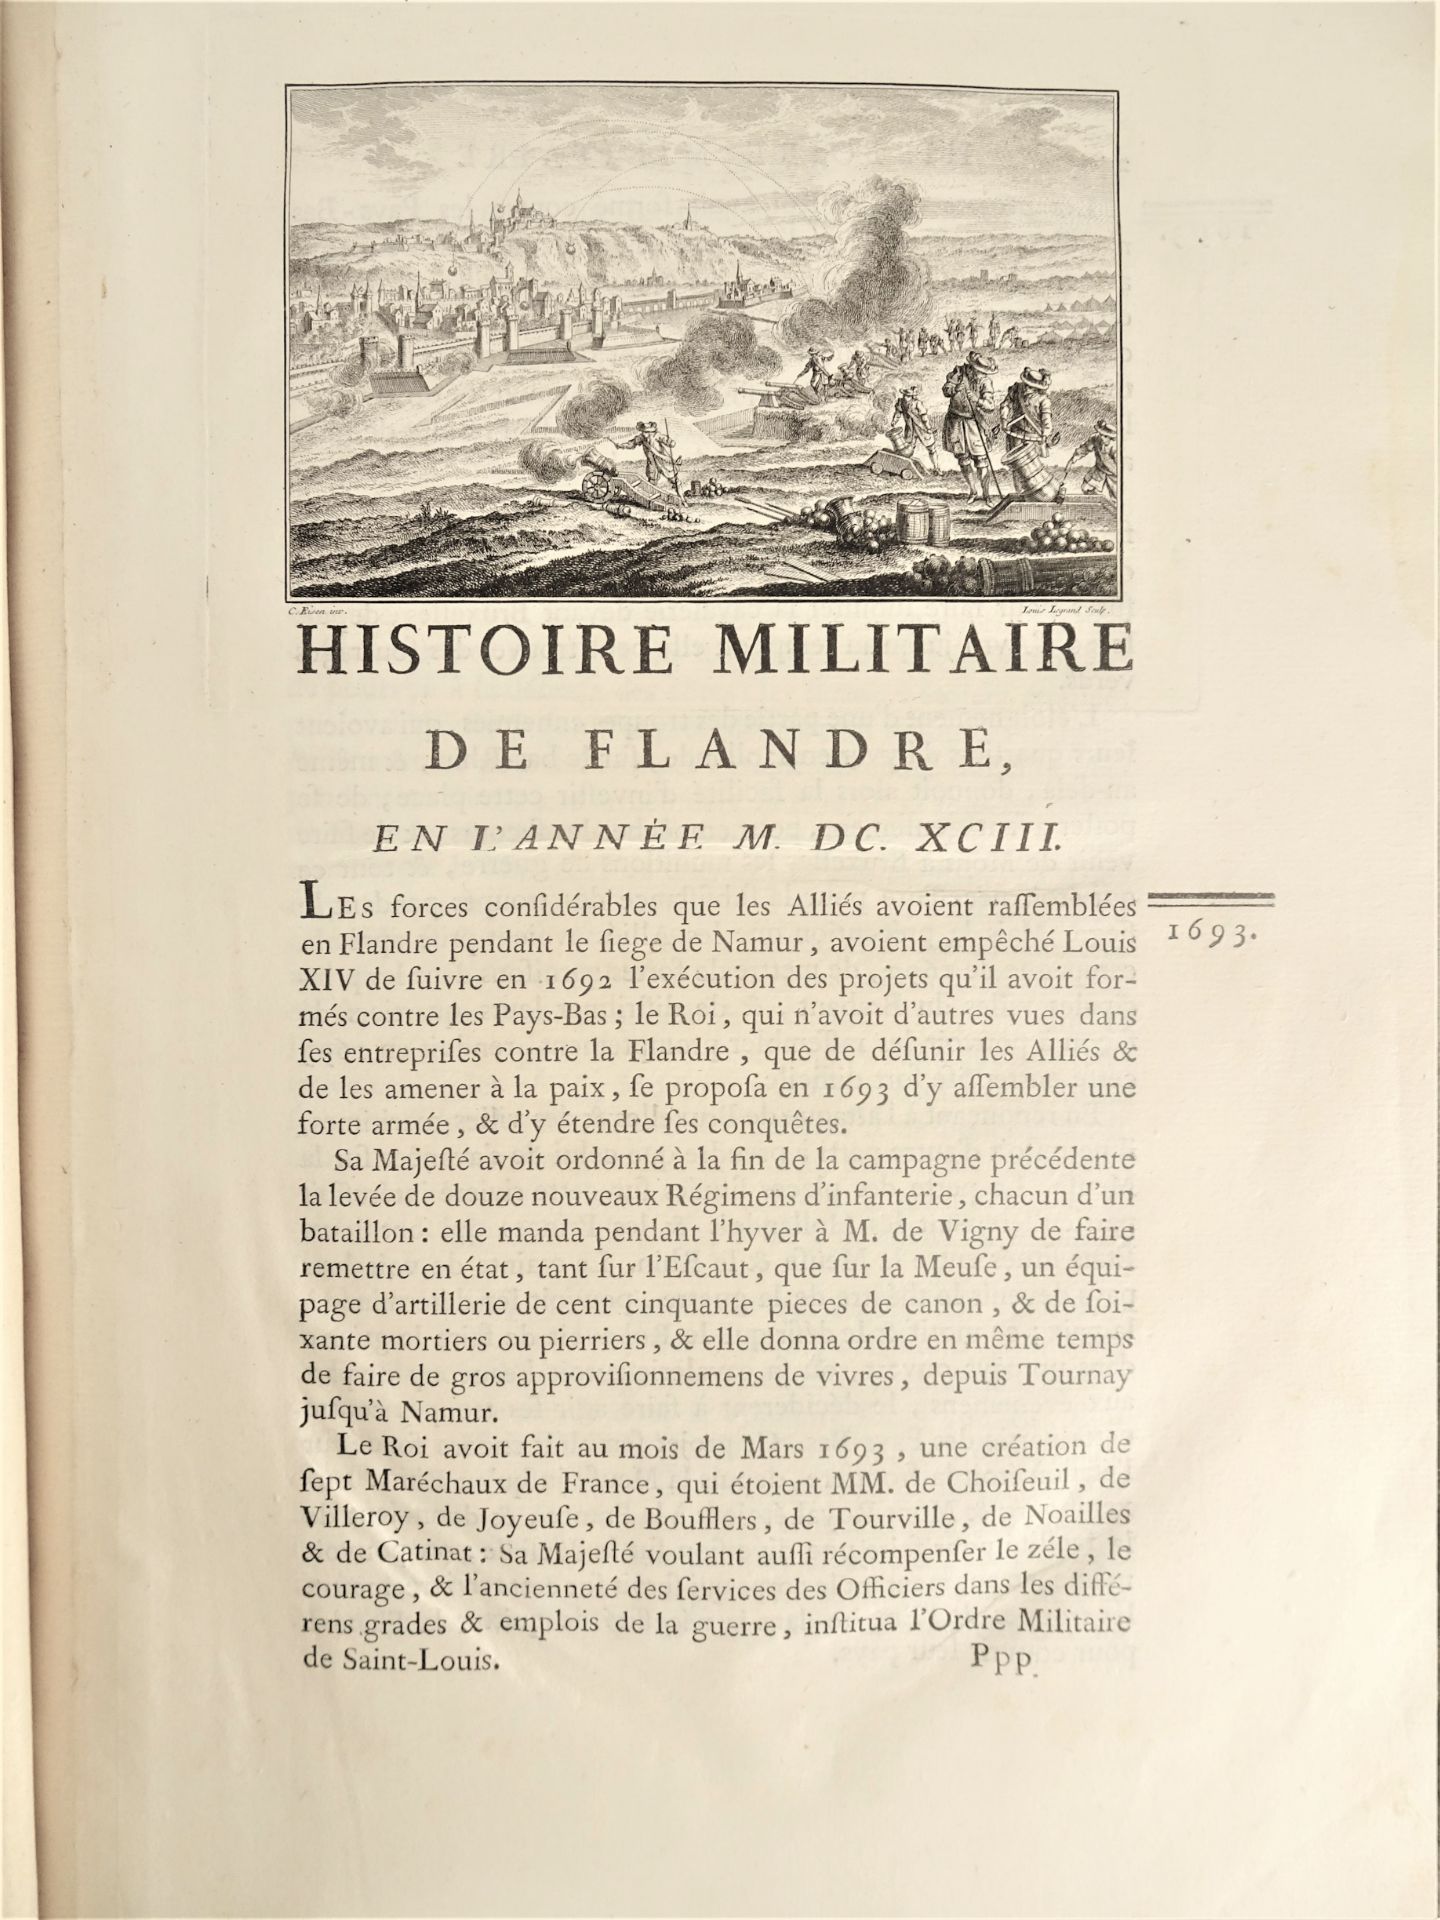 |Histoire Militaire| Chevalier de Beaurain, "Histoire Militaire de Flandre depuis l'année 1690 - Image 3 of 19